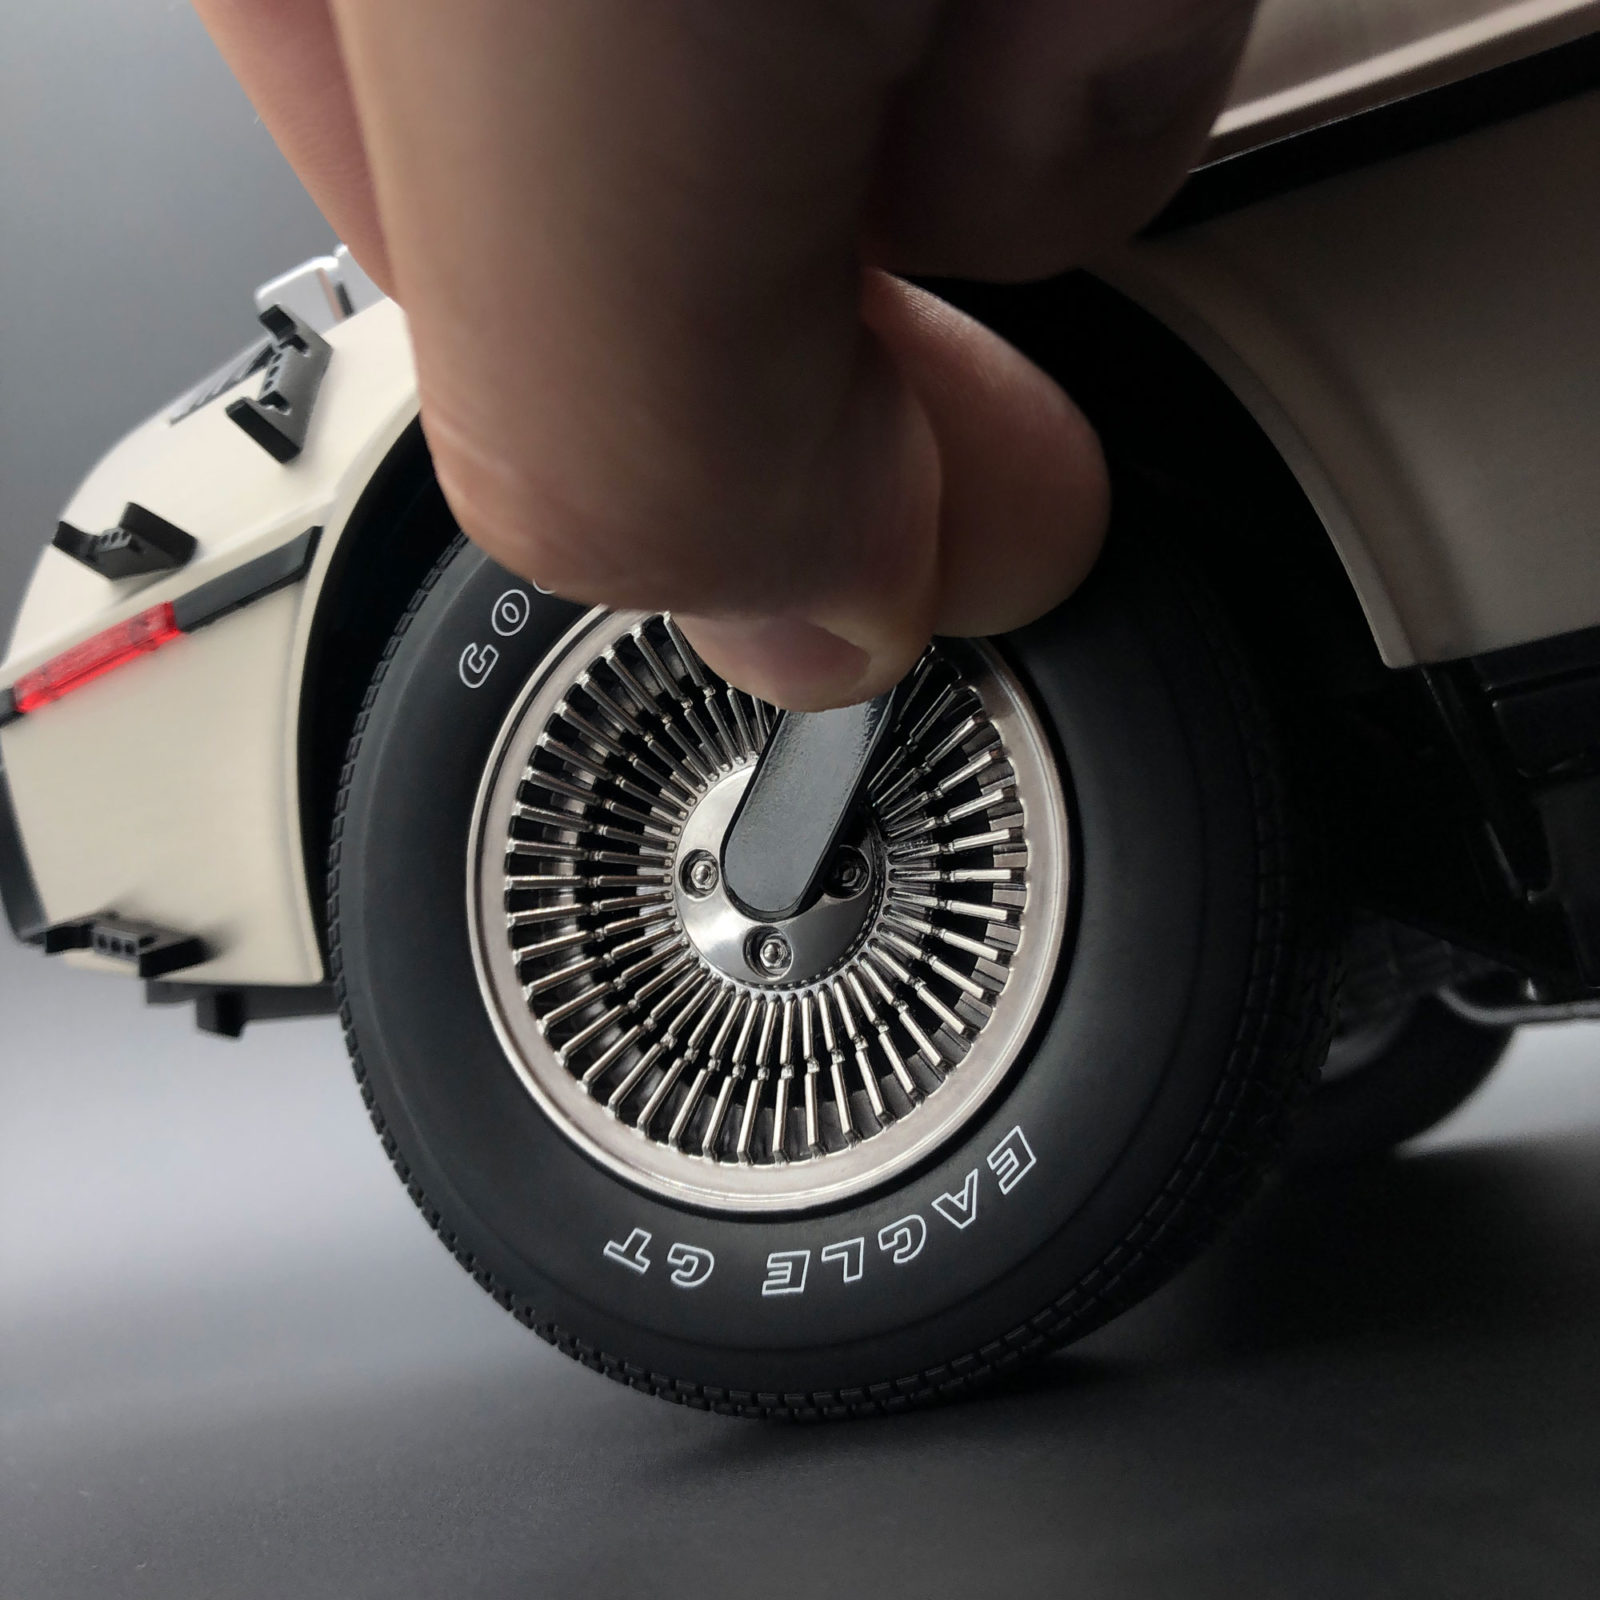 Applying magnetic tab to remove DeLorean wheel hub mod